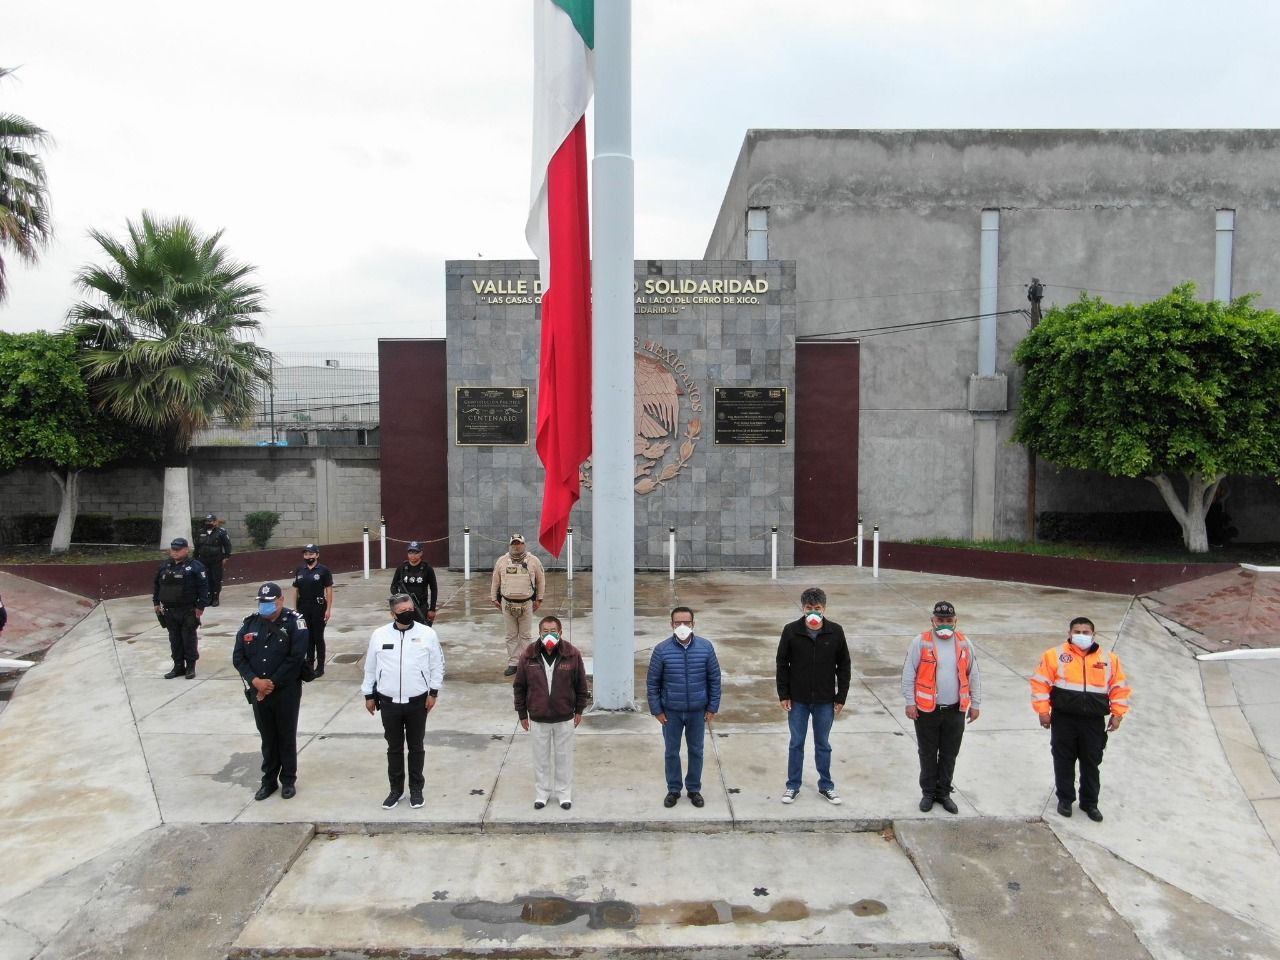 El gobierno de Valle de Chalco Solidaridad conmemora el 19 de septiembre de 1985 y 2017 en memoria de las víctimas del sismo